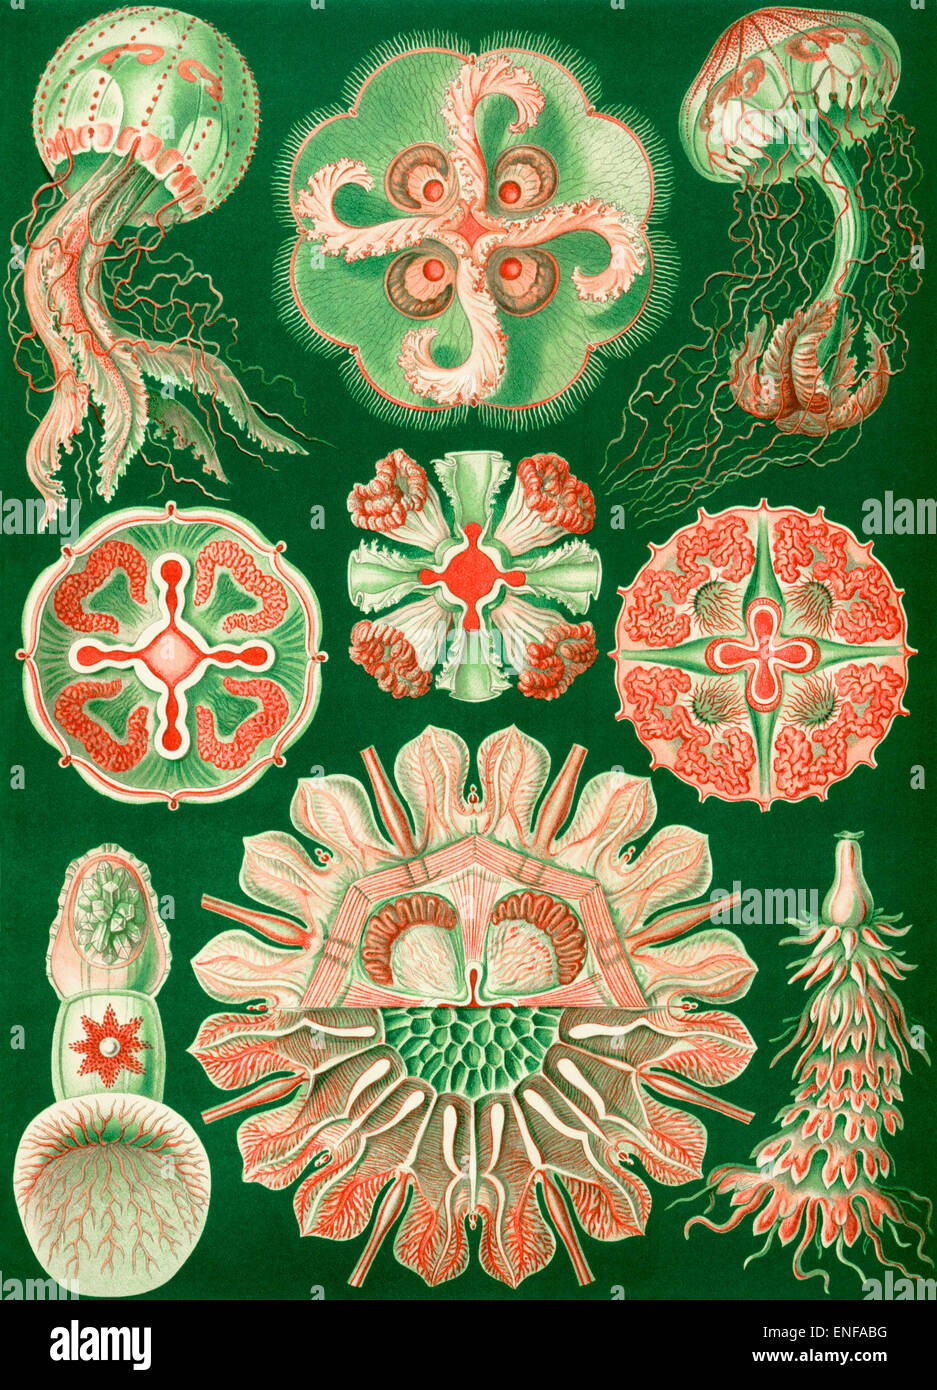 Discomedusae (Qualle), von Ernst Haeckel, 1904 - nur zur redaktionellen Verwendung. Stockfoto